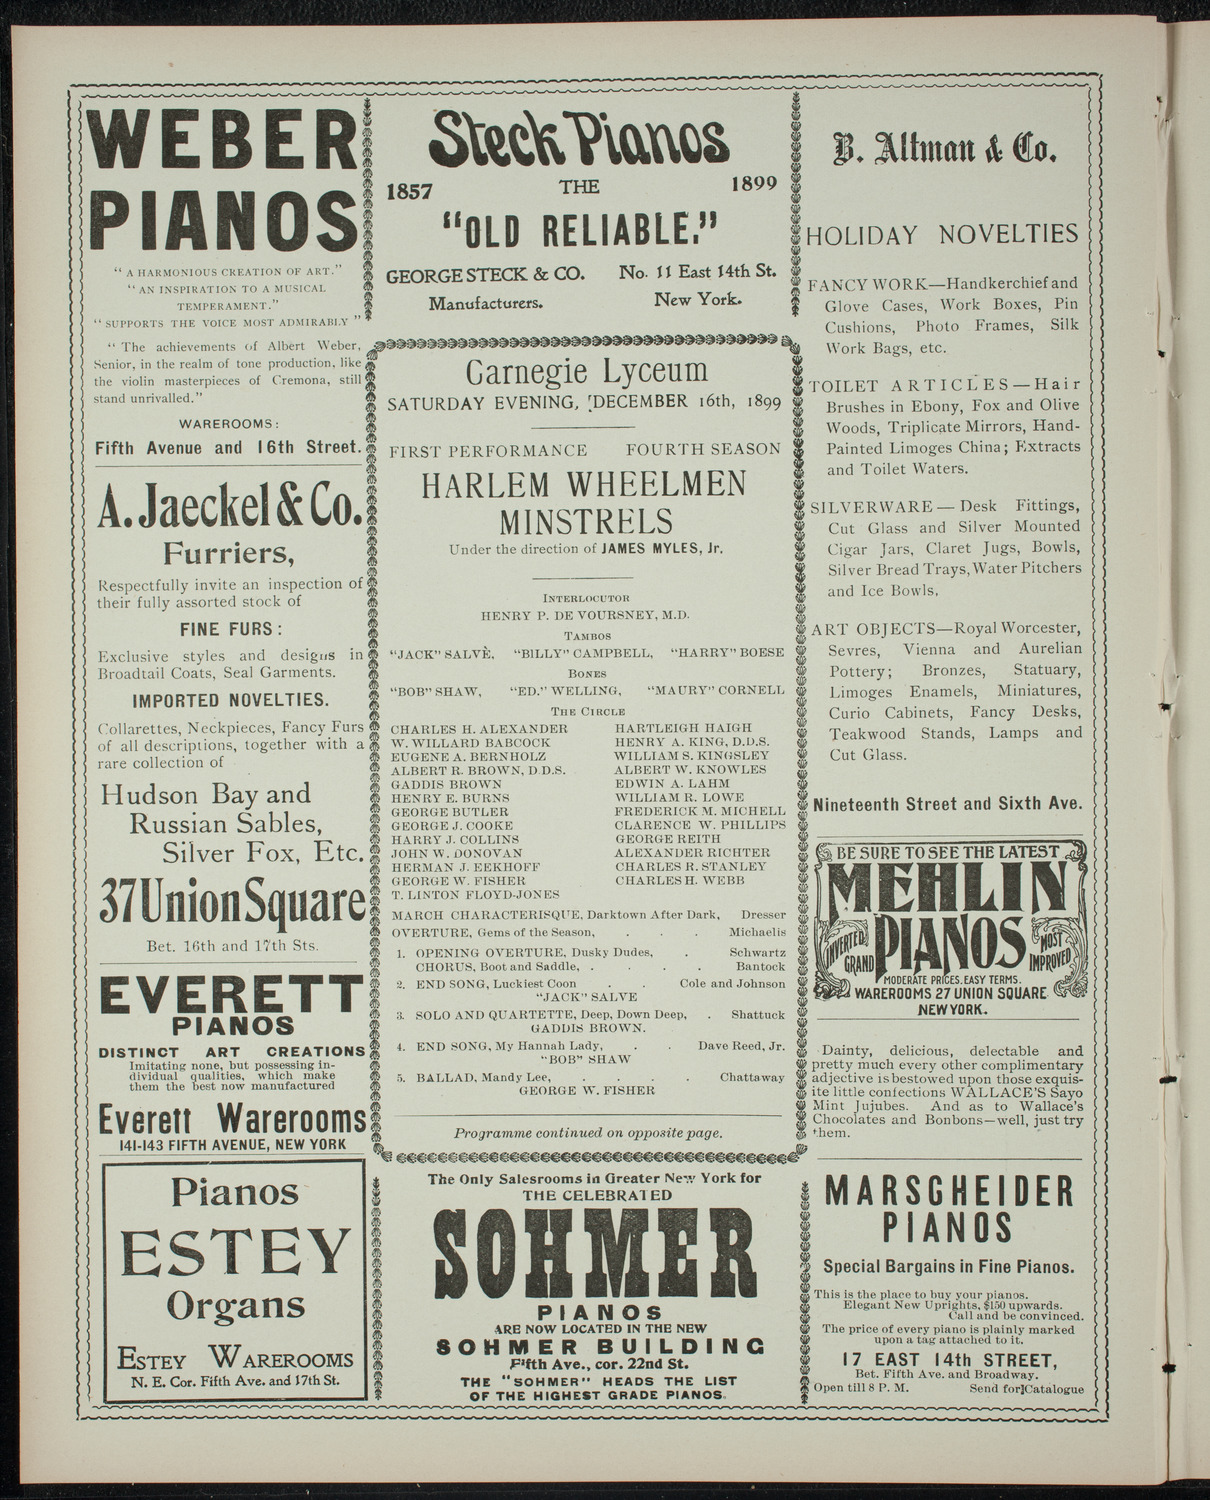 Harlem Wheelmen Minstrels, December 16, 1899, program page 2